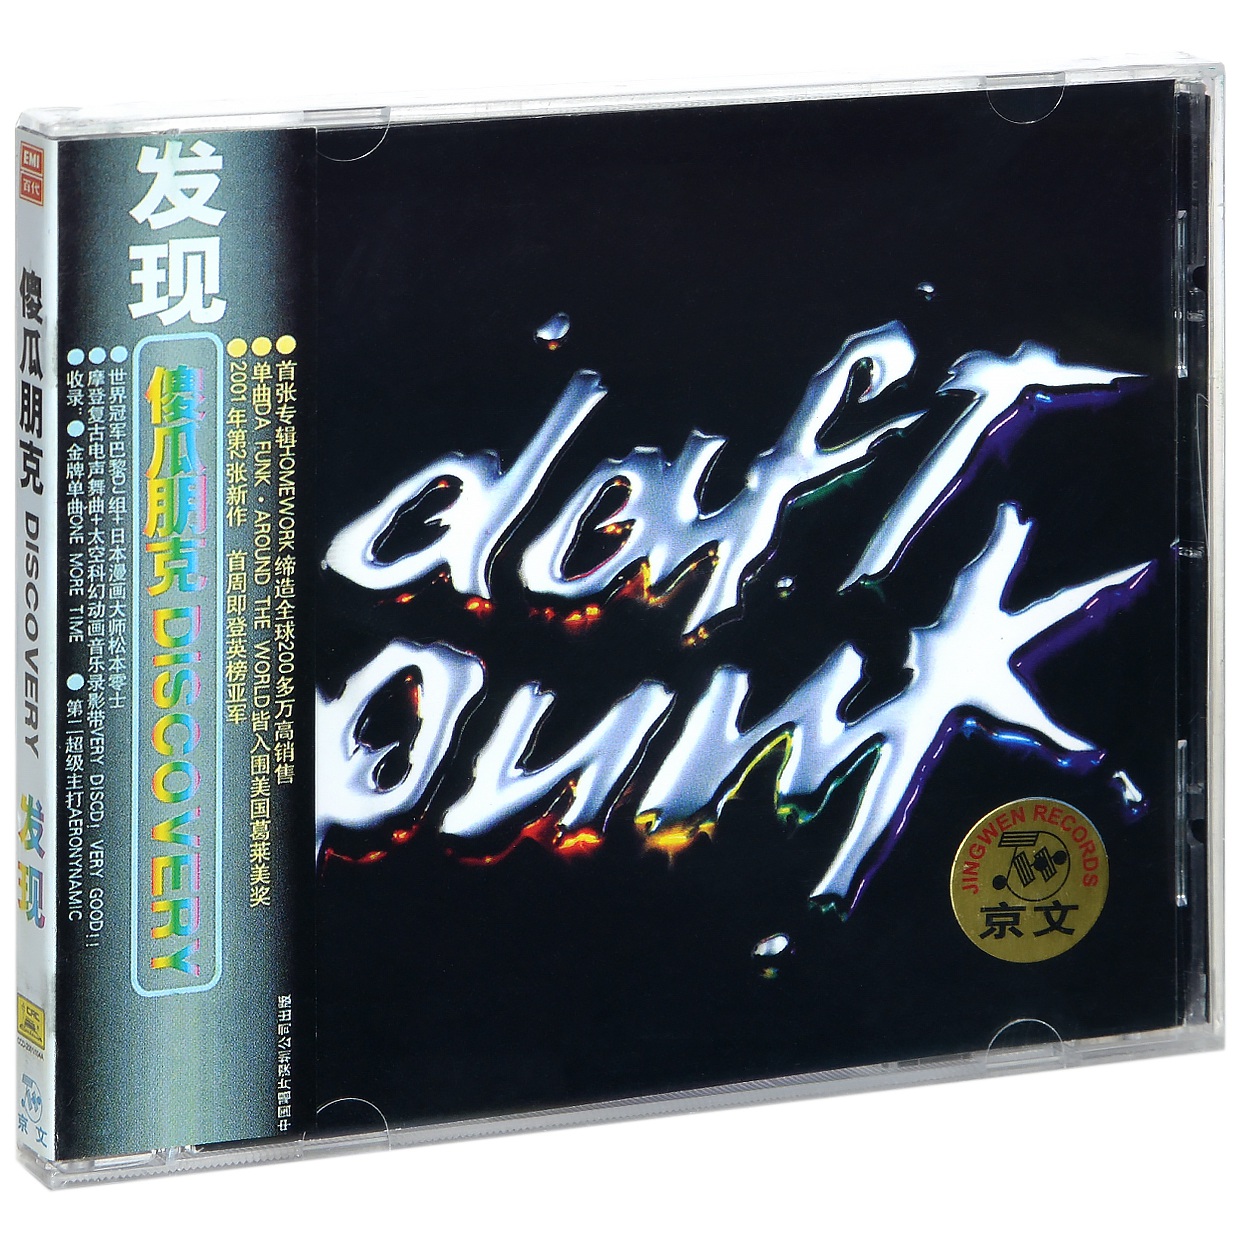 正版蠢朋克乐队专辑傻瓜朋克发现 Daft Punk Discovery CD碟片